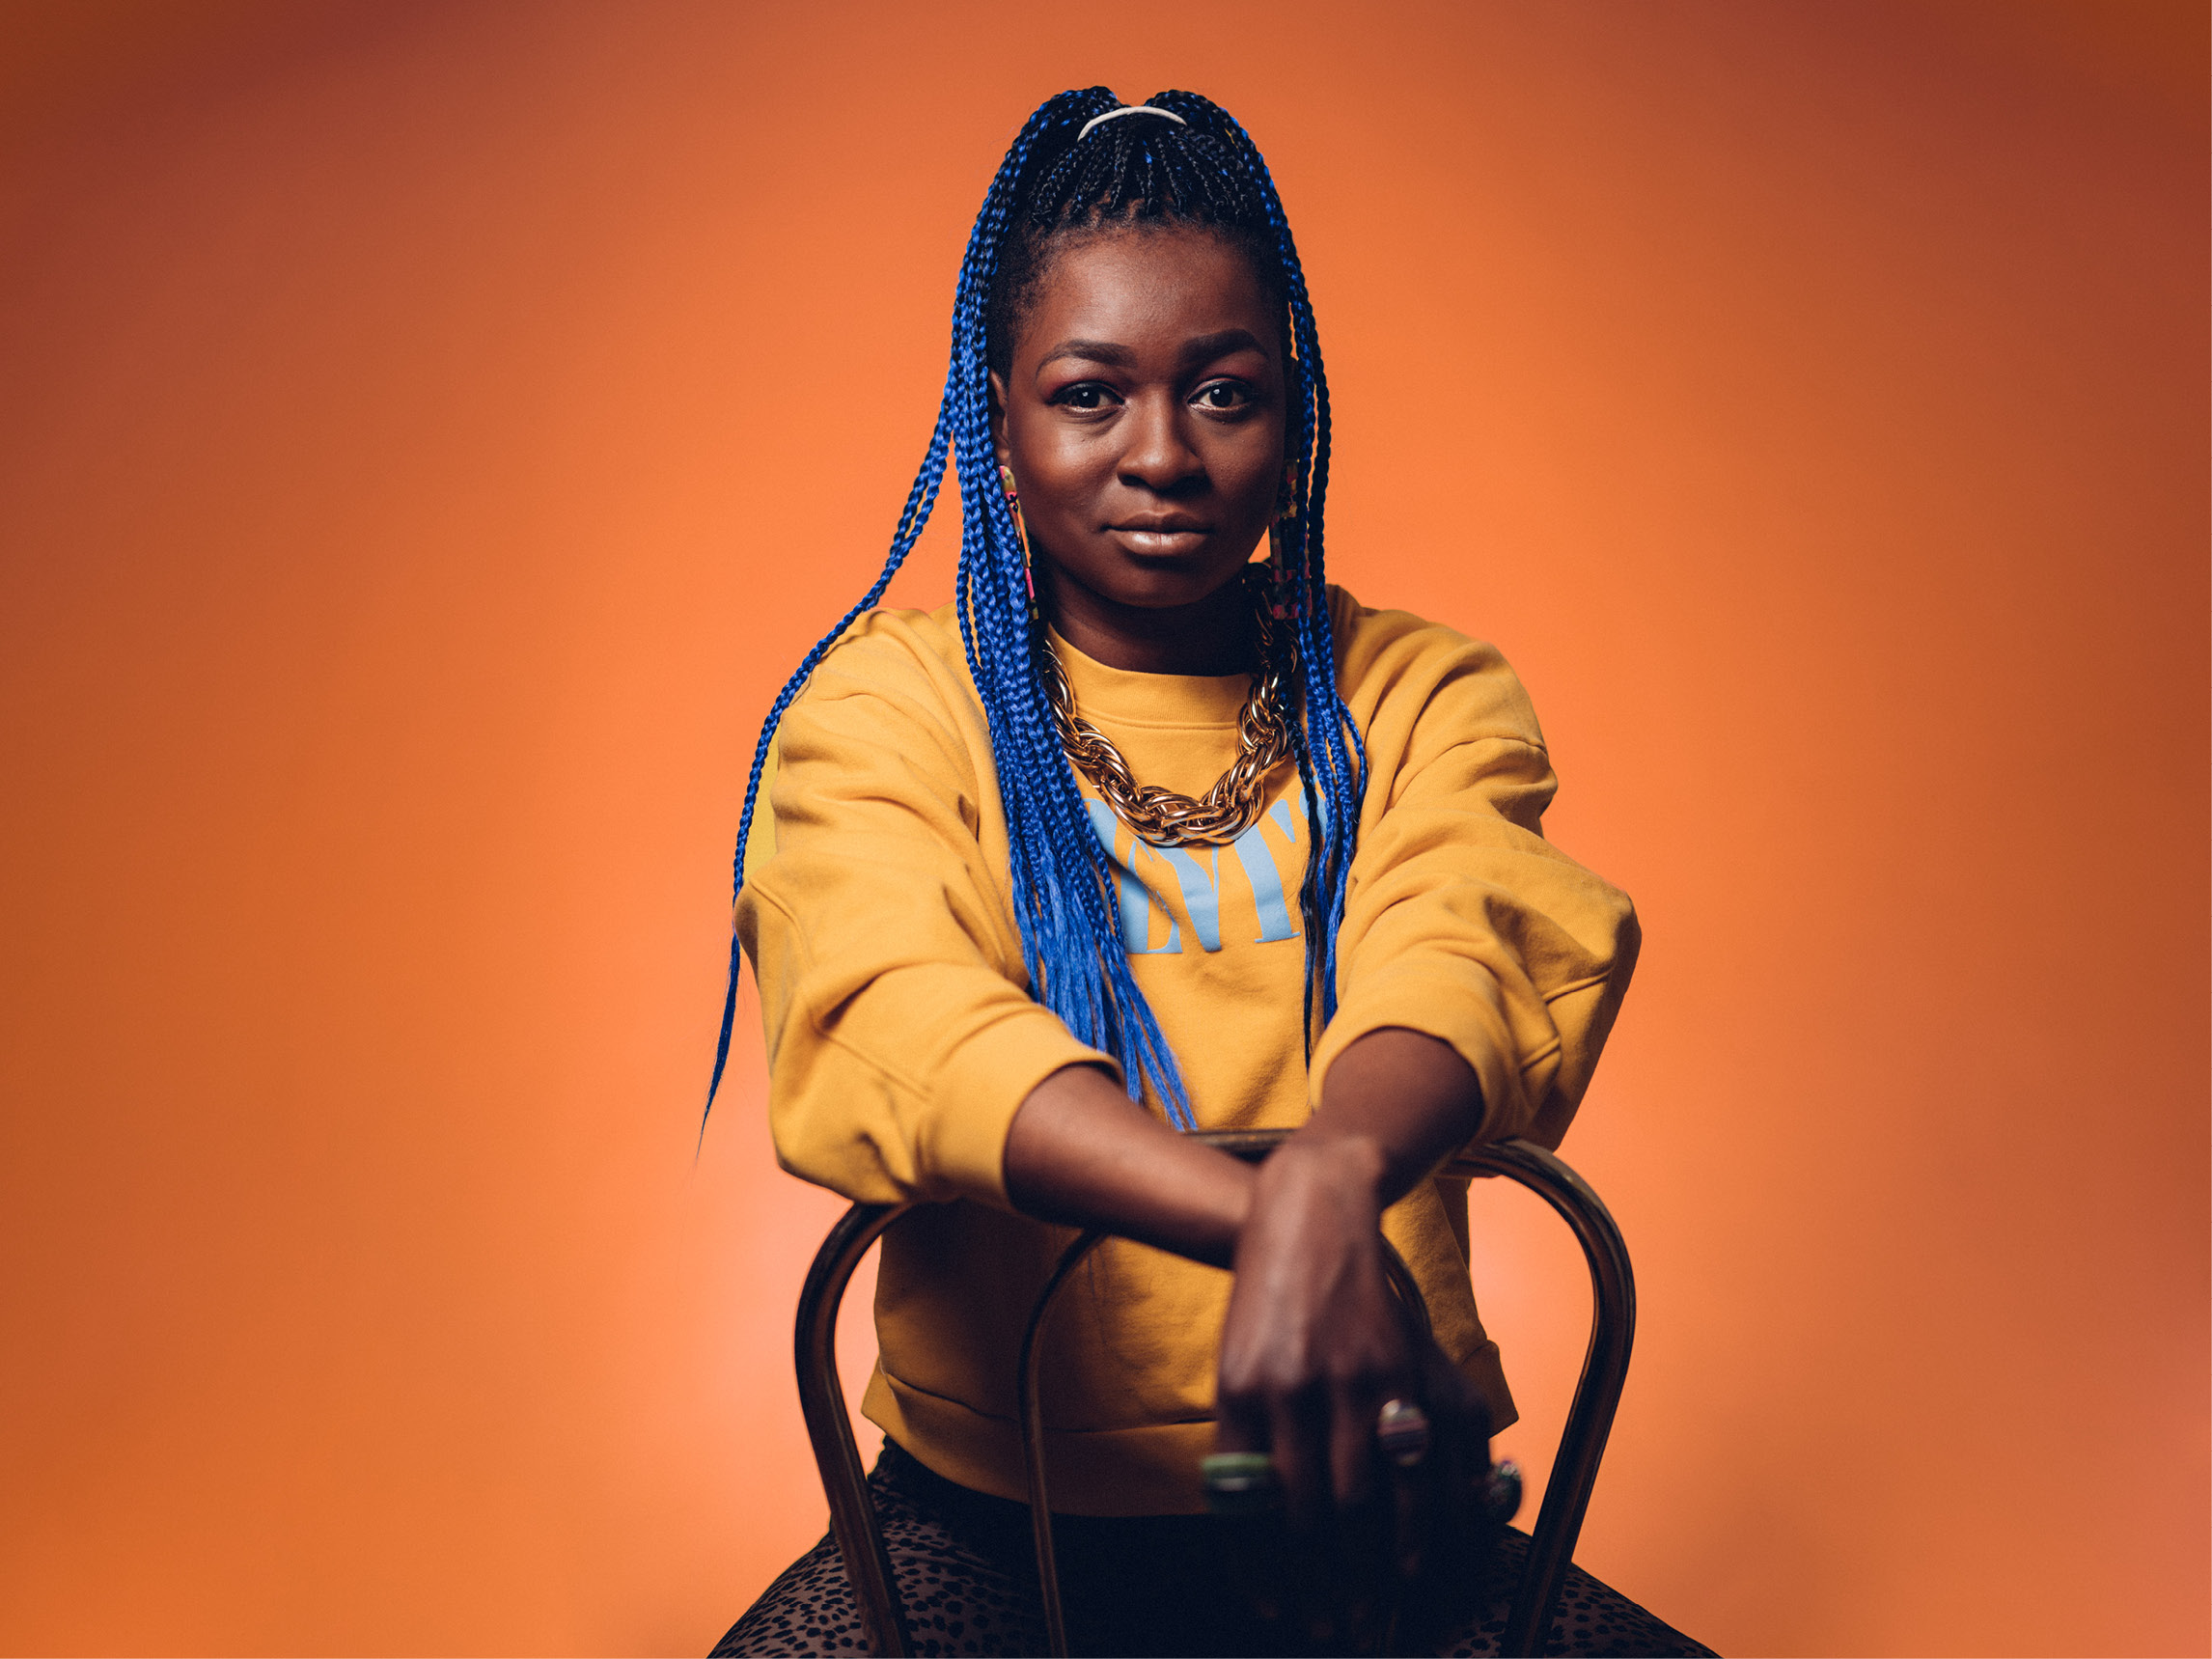 Malonda ist politische Künstlerin und Aktivistin gegen Rassismus, für queerfeministische und intersektionale Awareness. Musikalisch schwebt sie zwischen Pop, Elektrobeats und klassischem Chanson – es geht um Liebe und ihr Leben als Schwarze Frau.